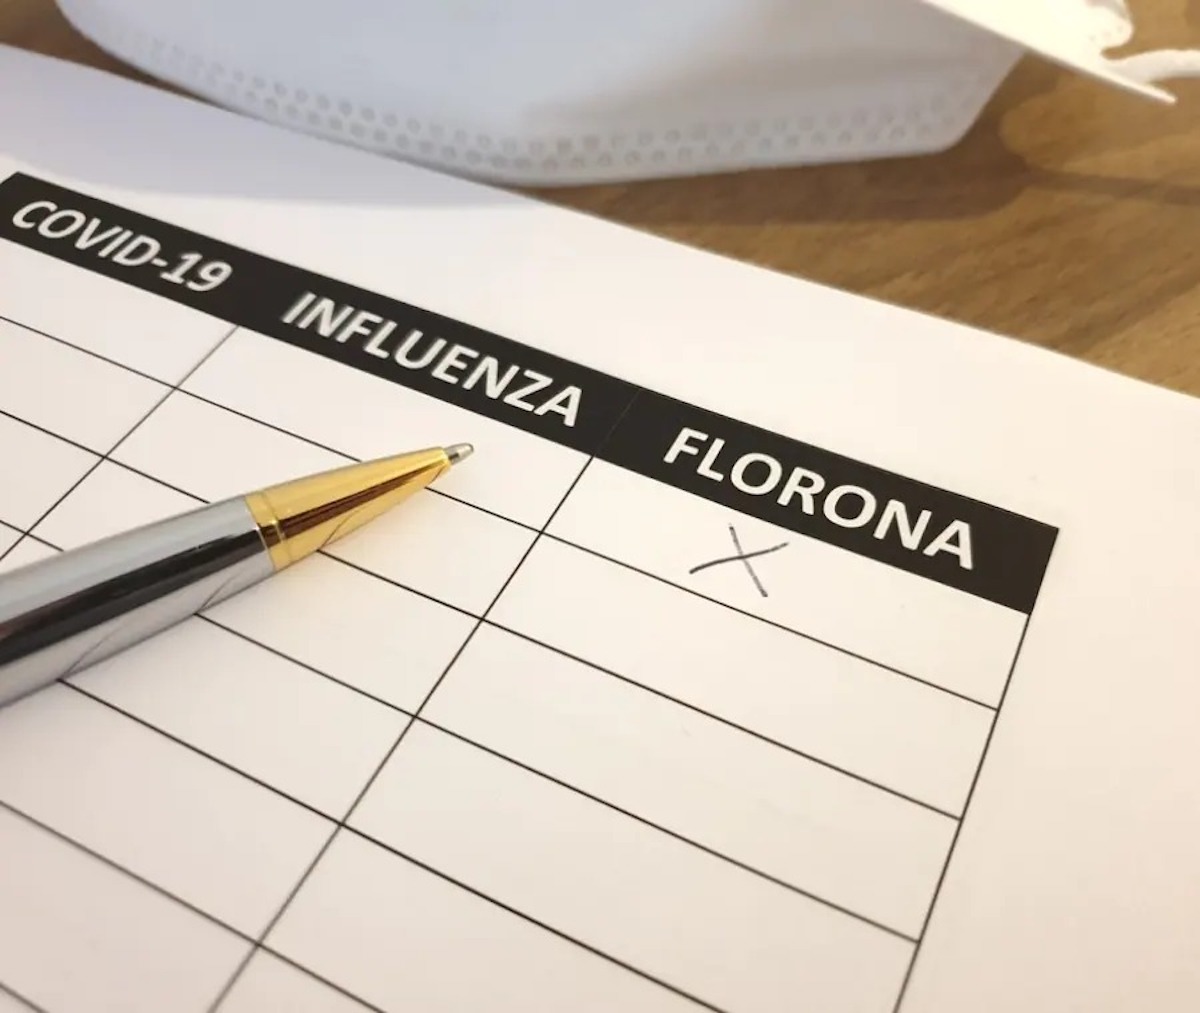 Flurona sintomi infezione Covid influenza